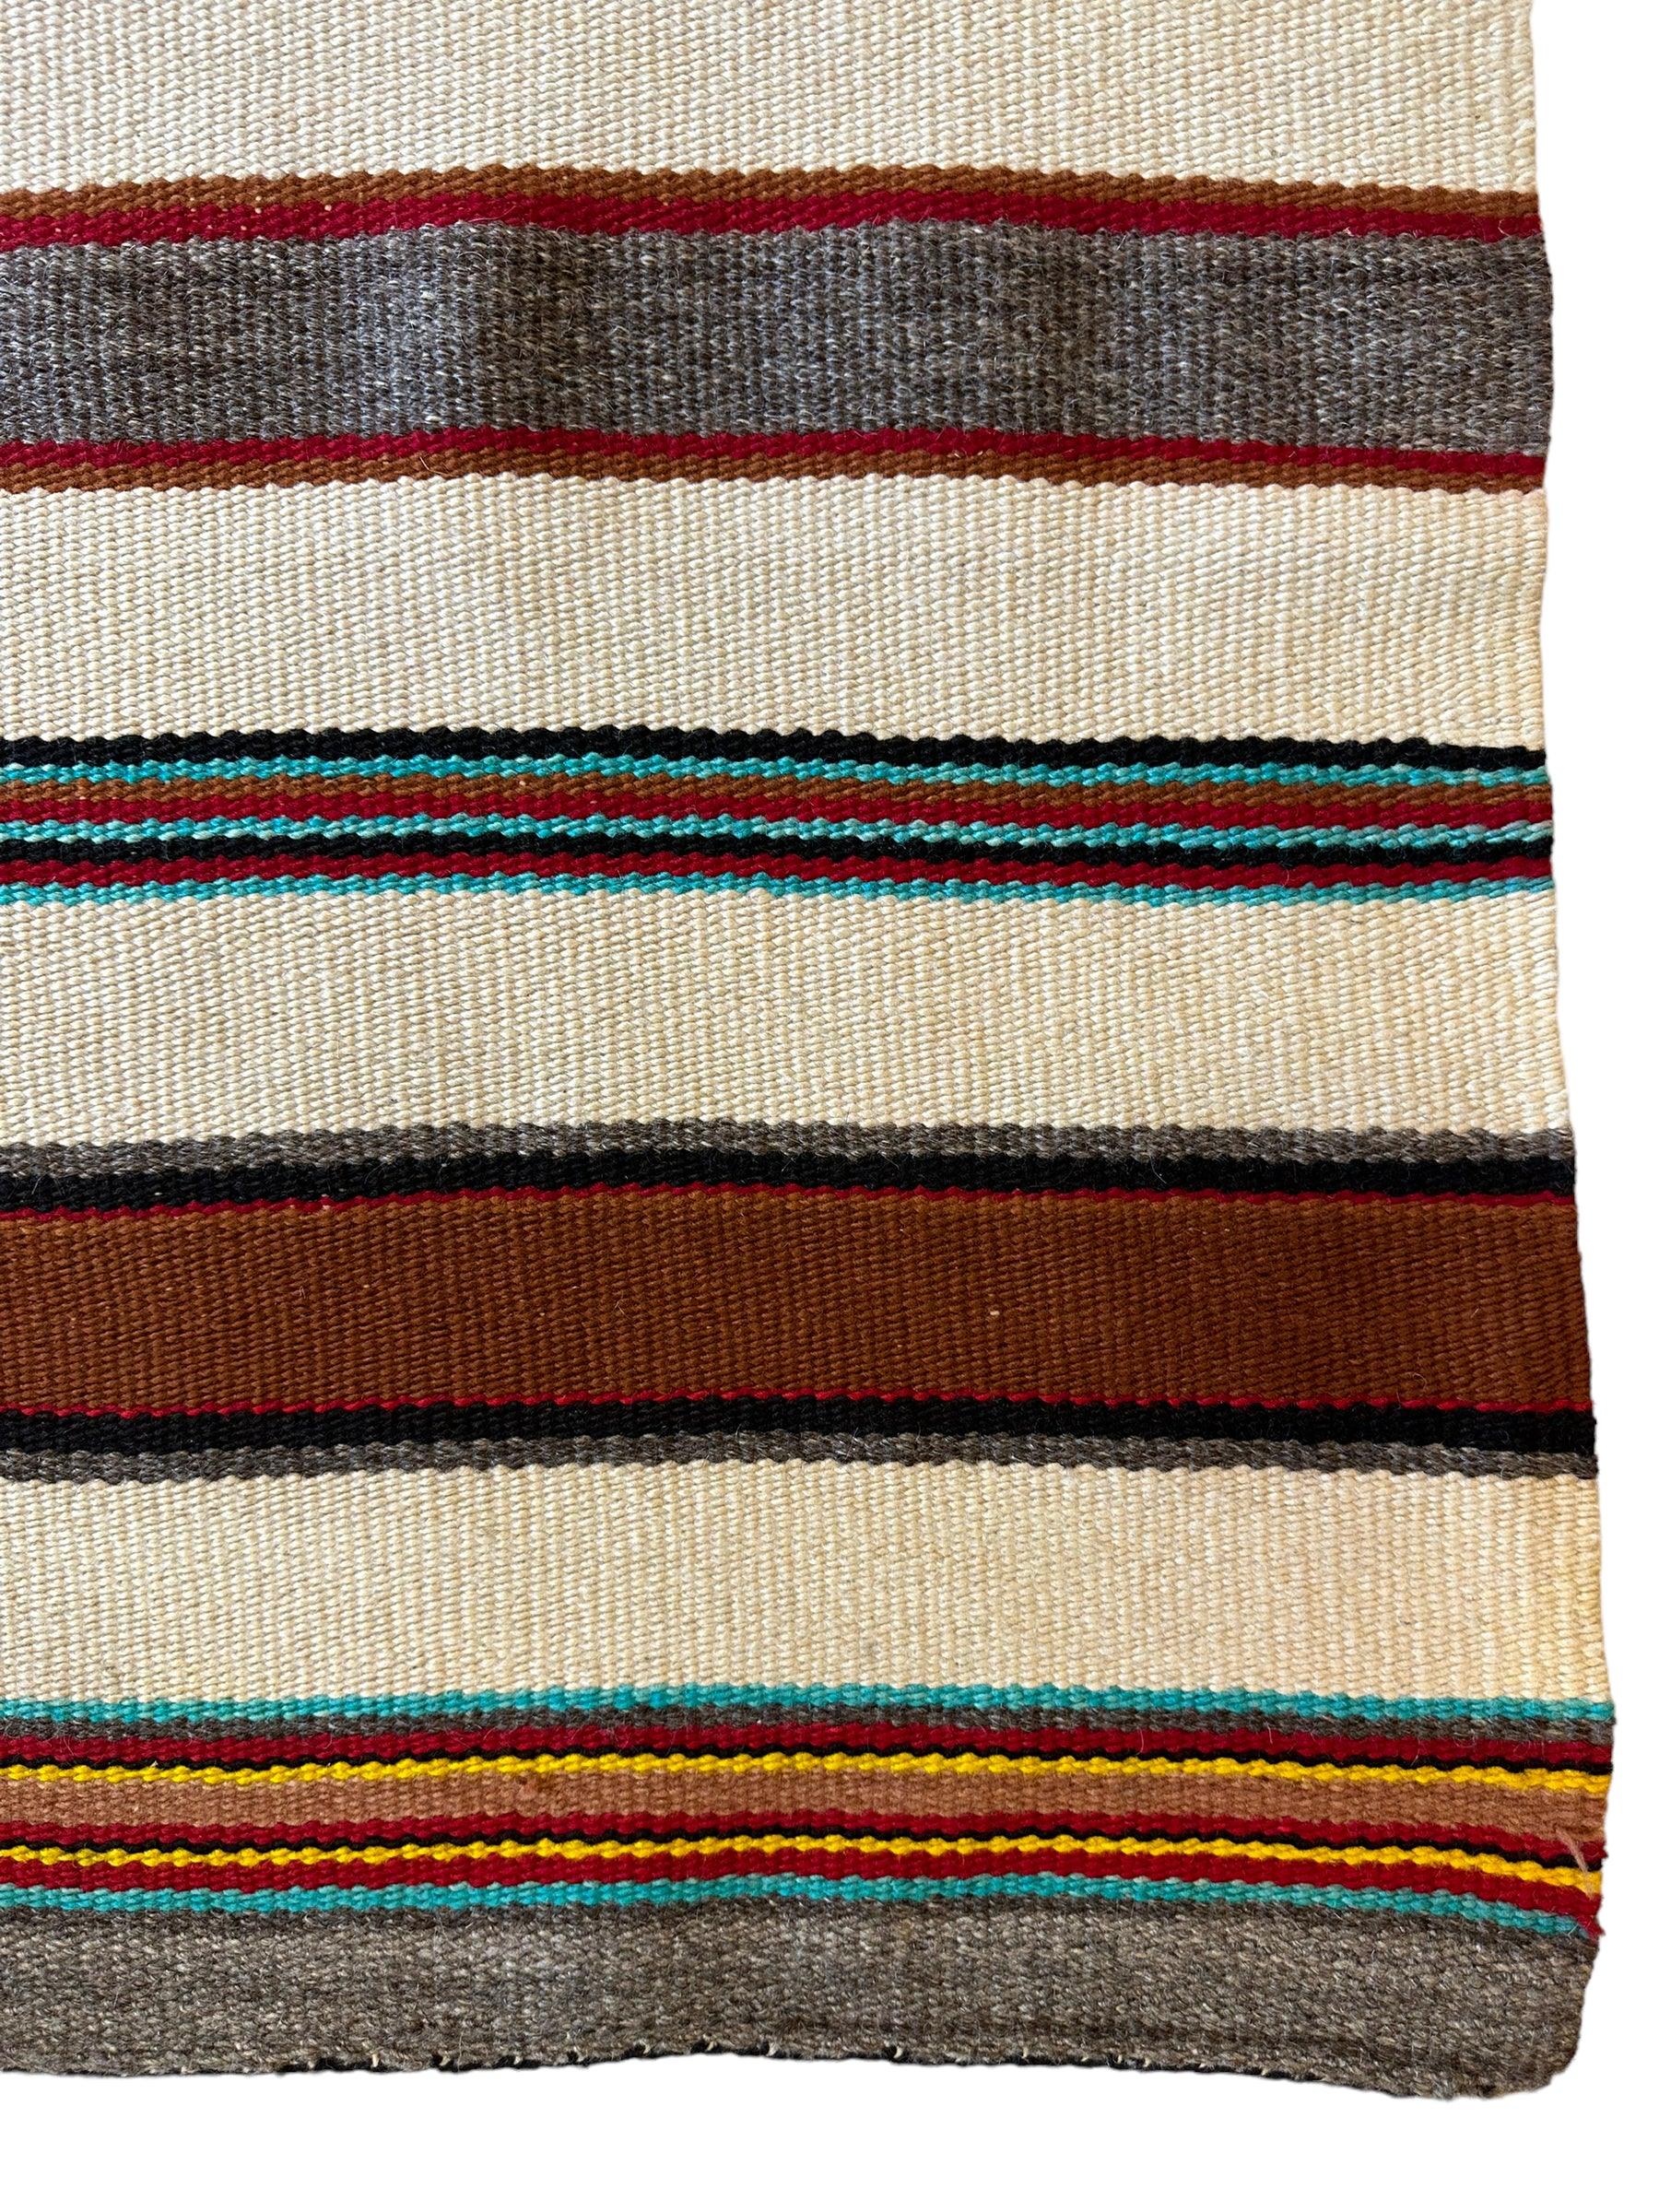 Vintage Native American Navajo Rug 30” x 63”